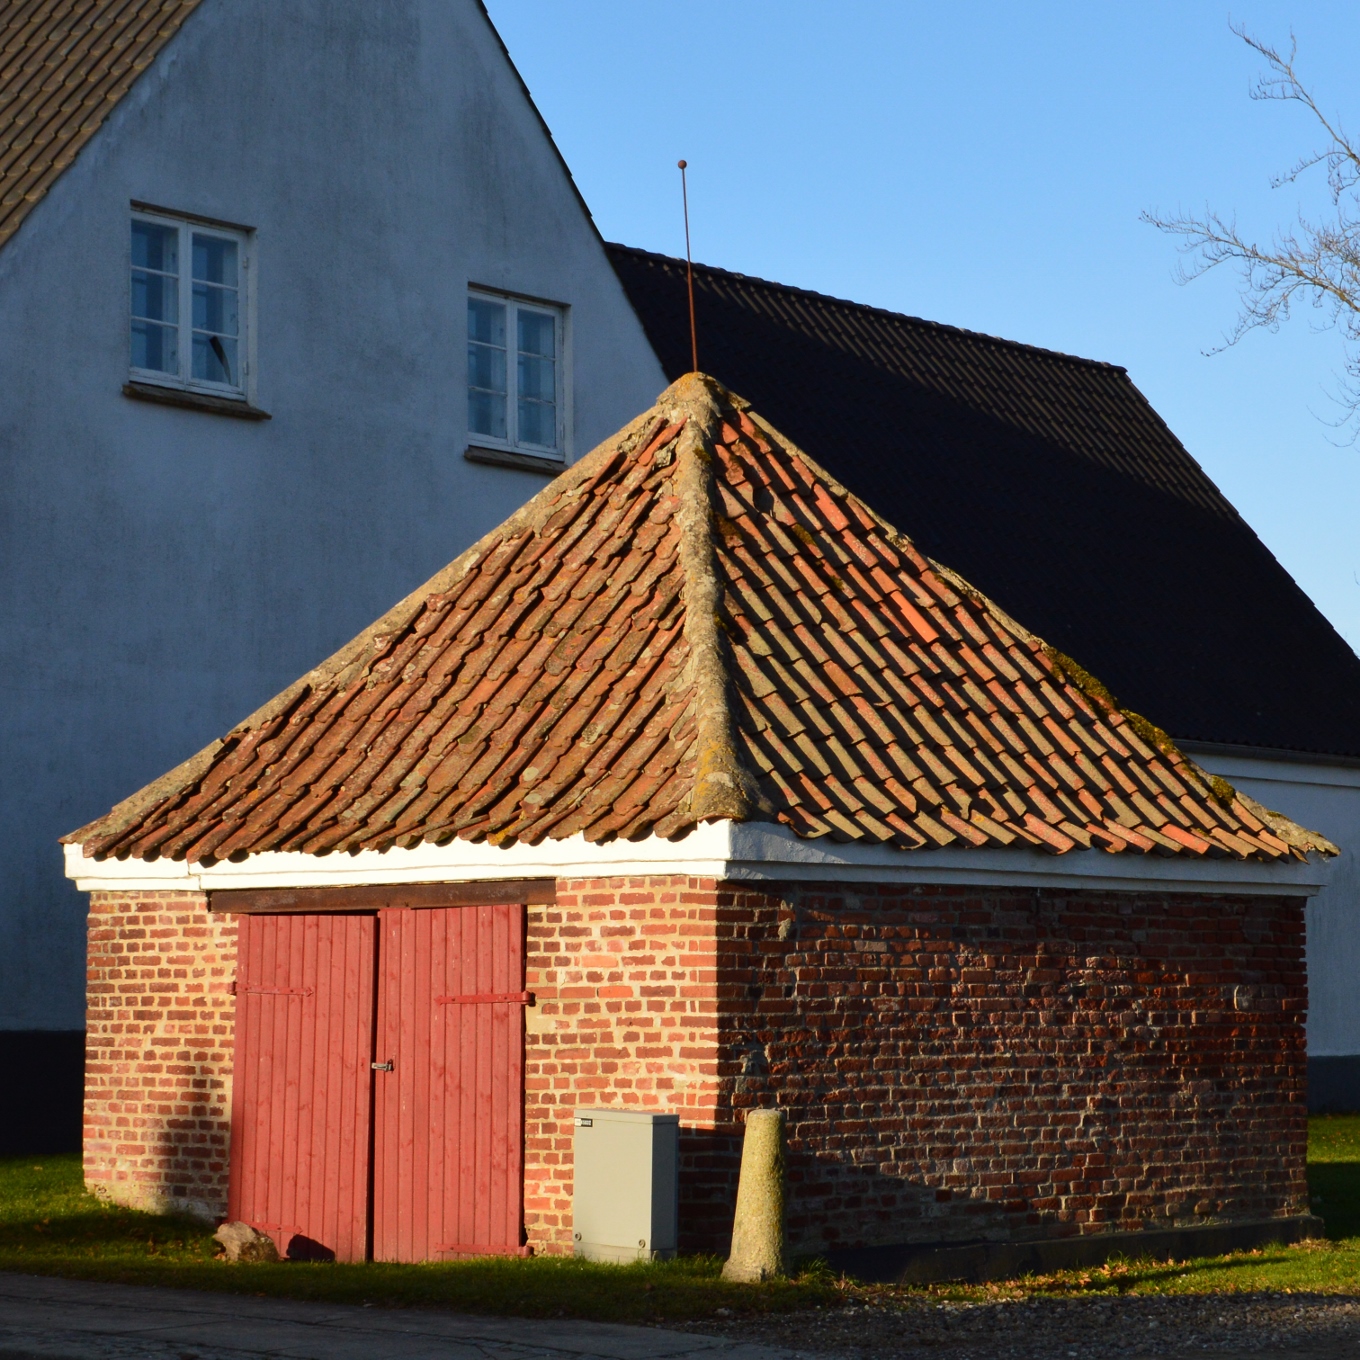 Uge 48 – Pumpehuset i Daugård